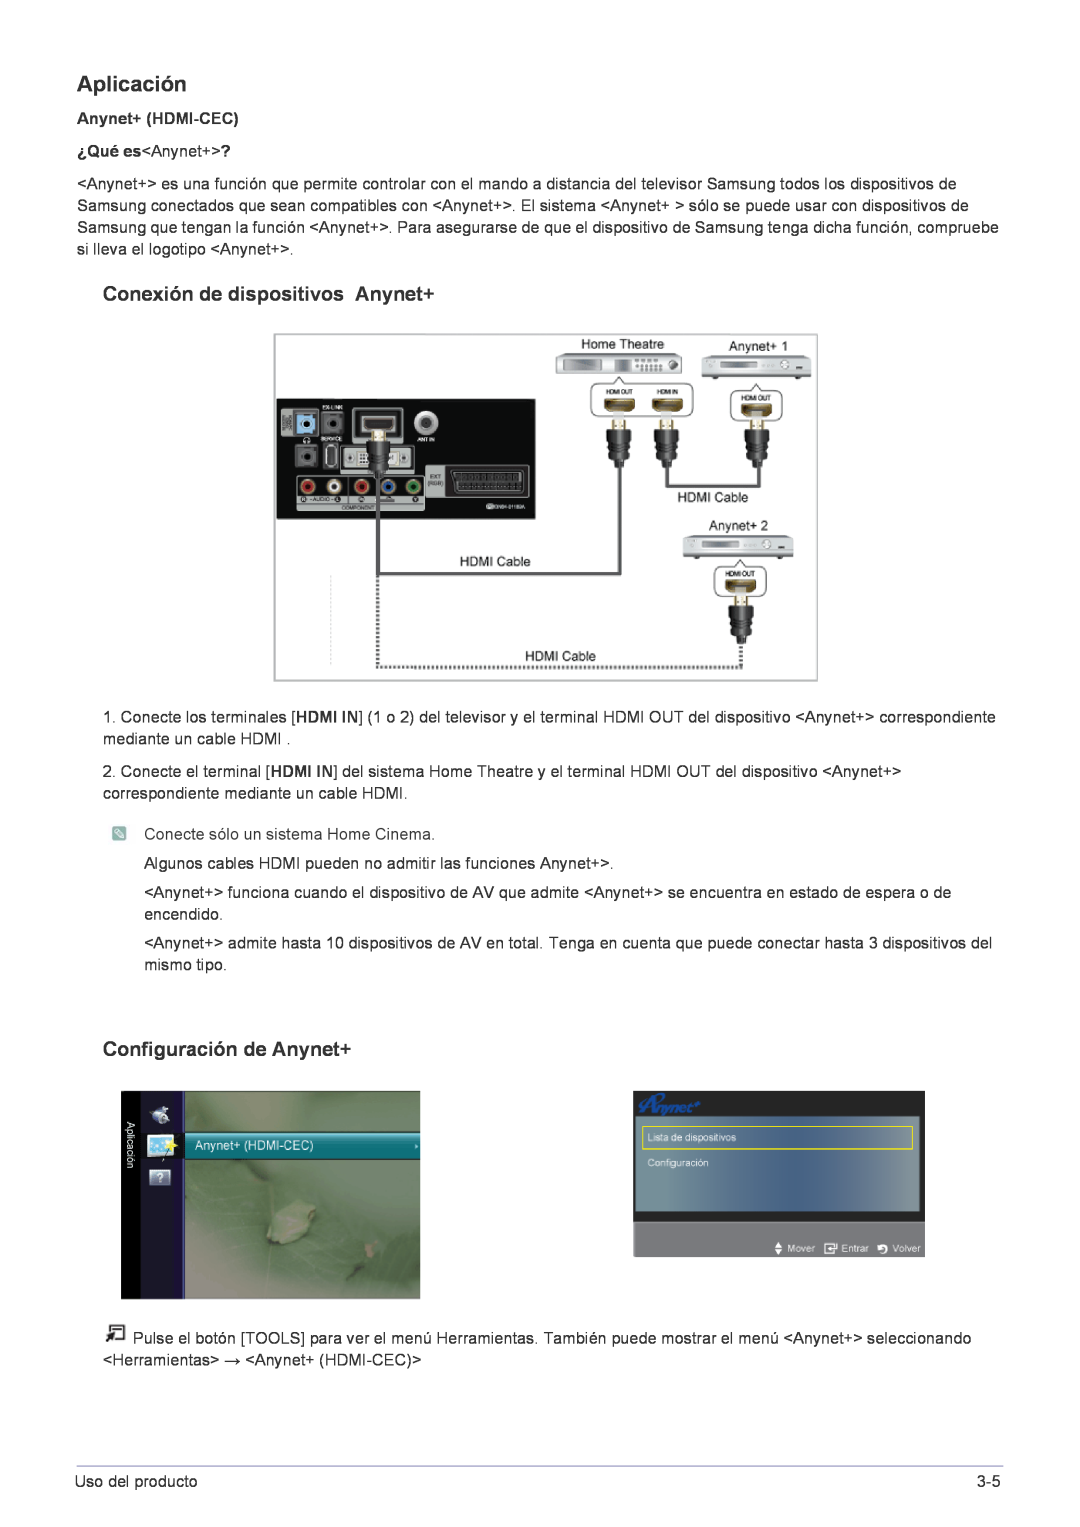 Samsung LS22FMDGF/EN manual Aplicación, Conexión de dispositivos Anynet+, Configuración de Anynet+, Anynet+ HDMI-CEC 